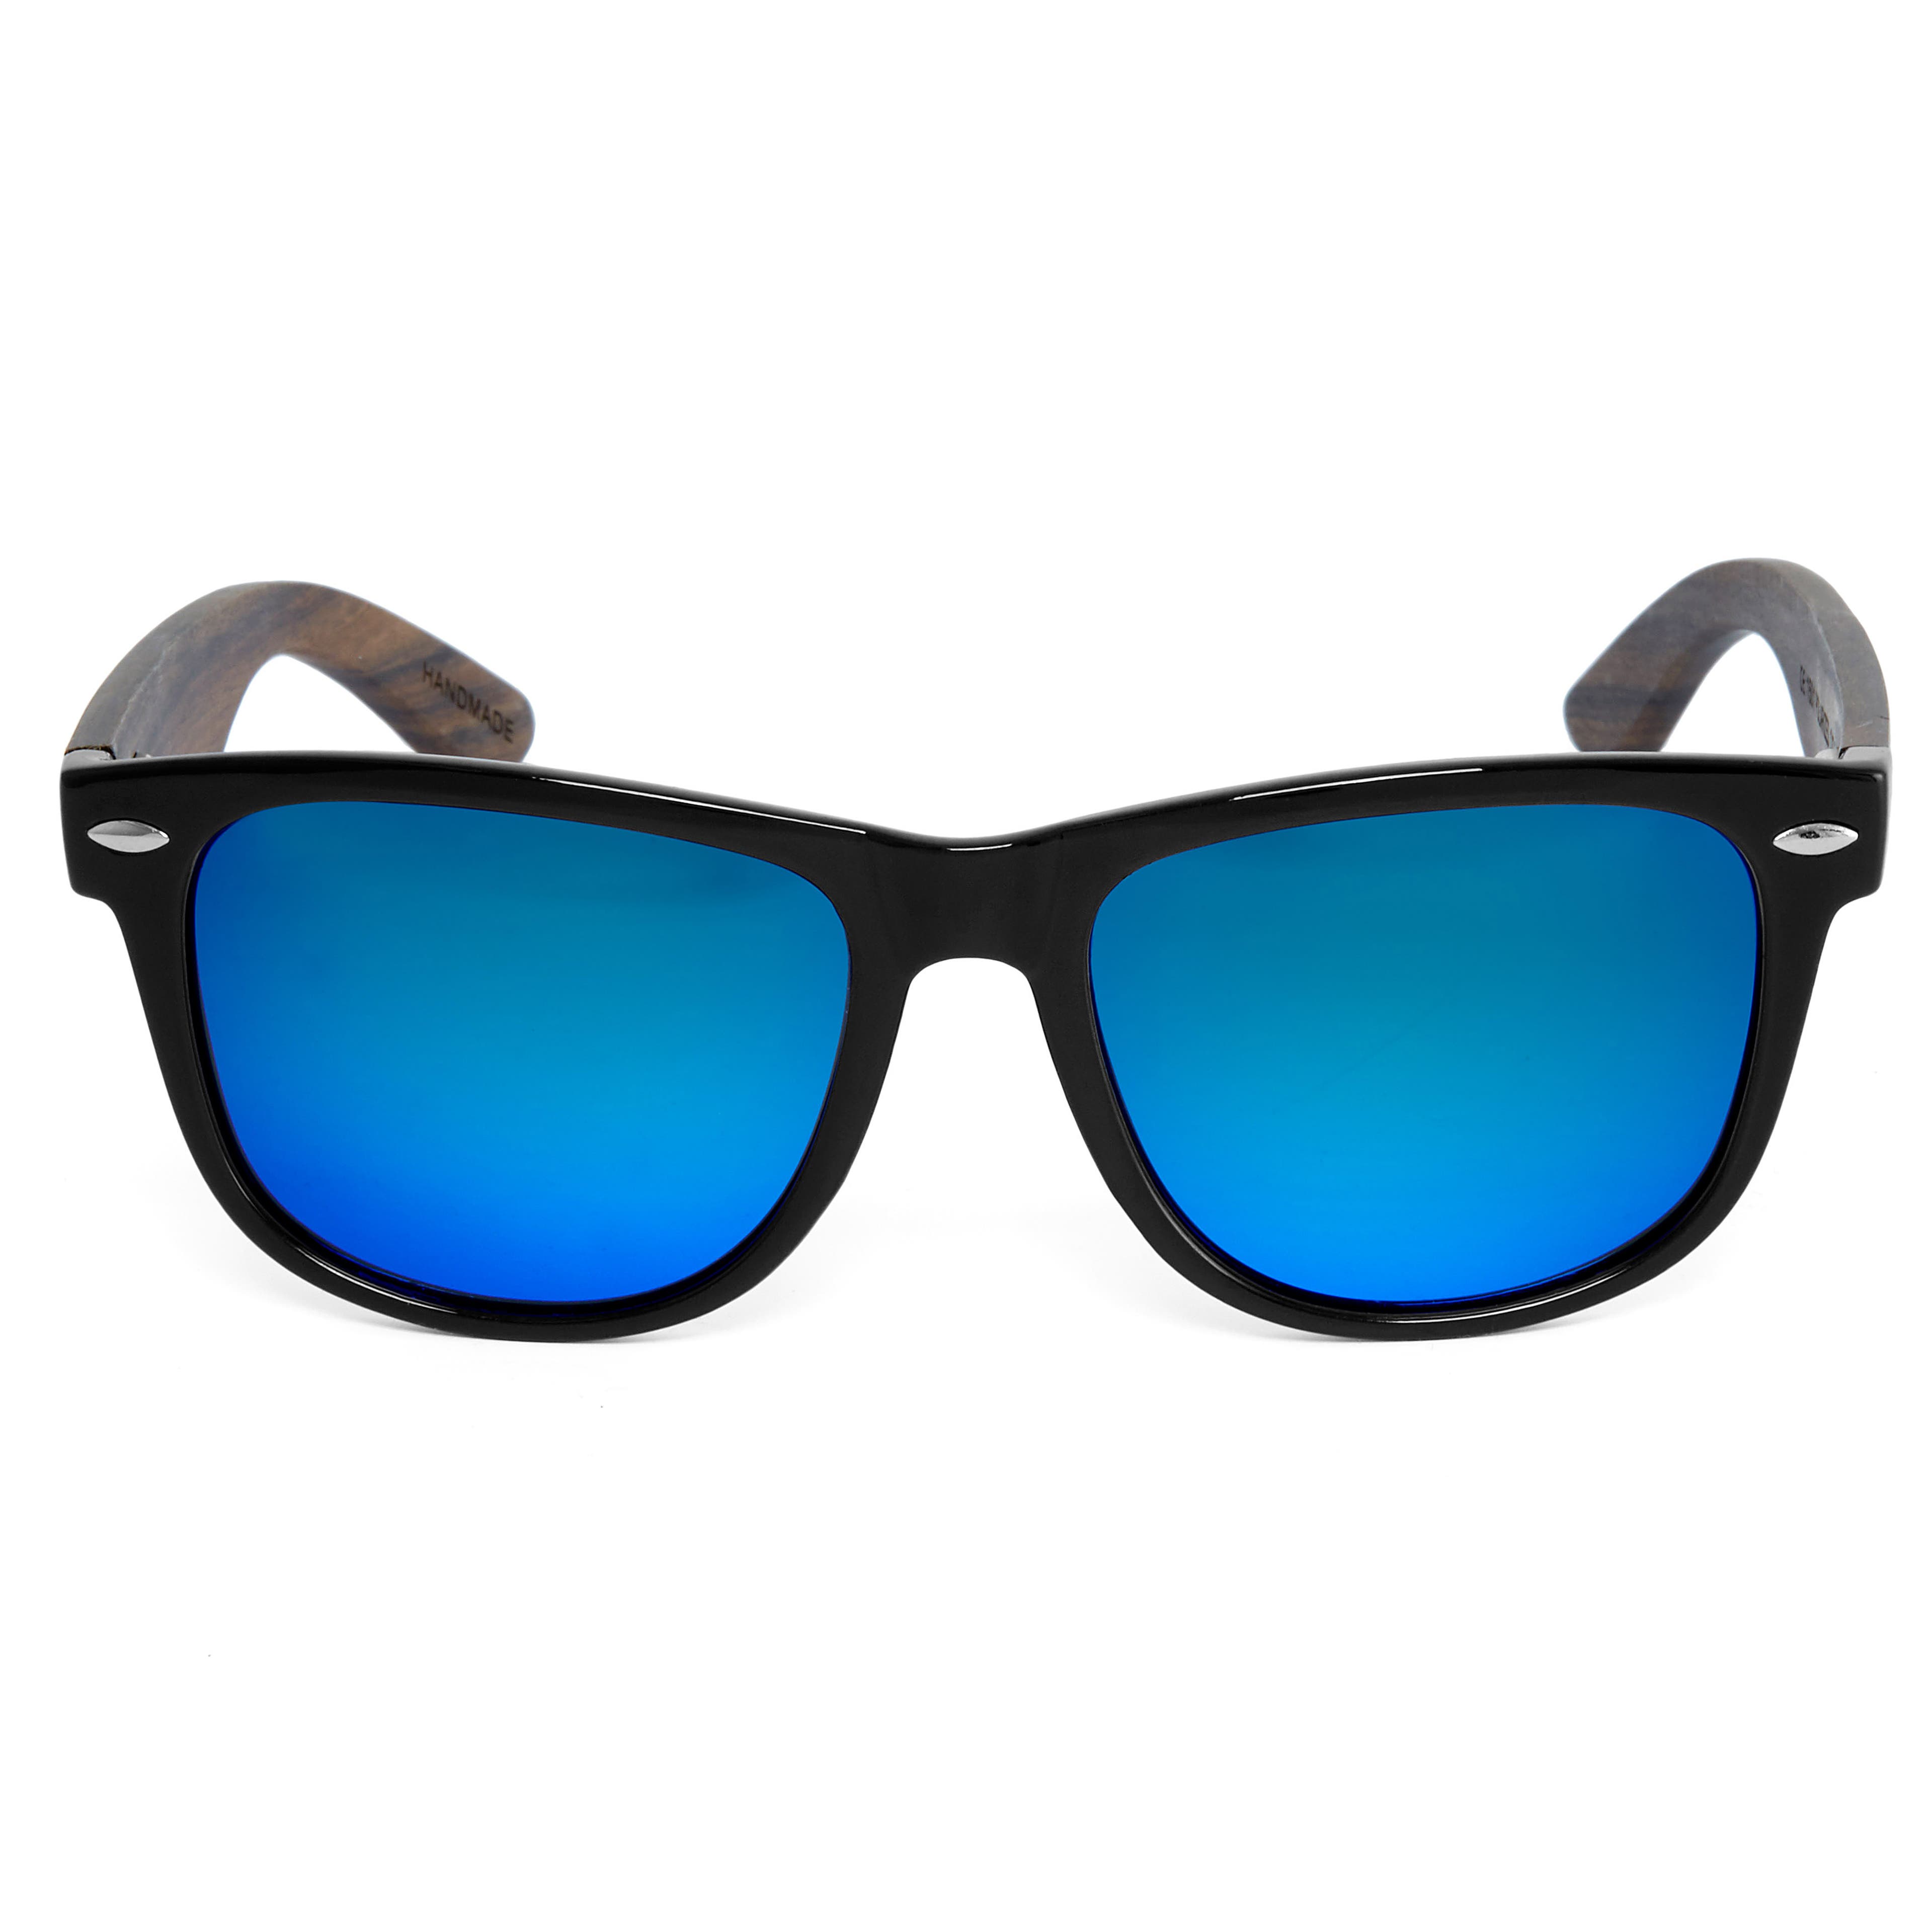 Polarisierte Ebenholz Sonnenbrille In Schwarz & Blau